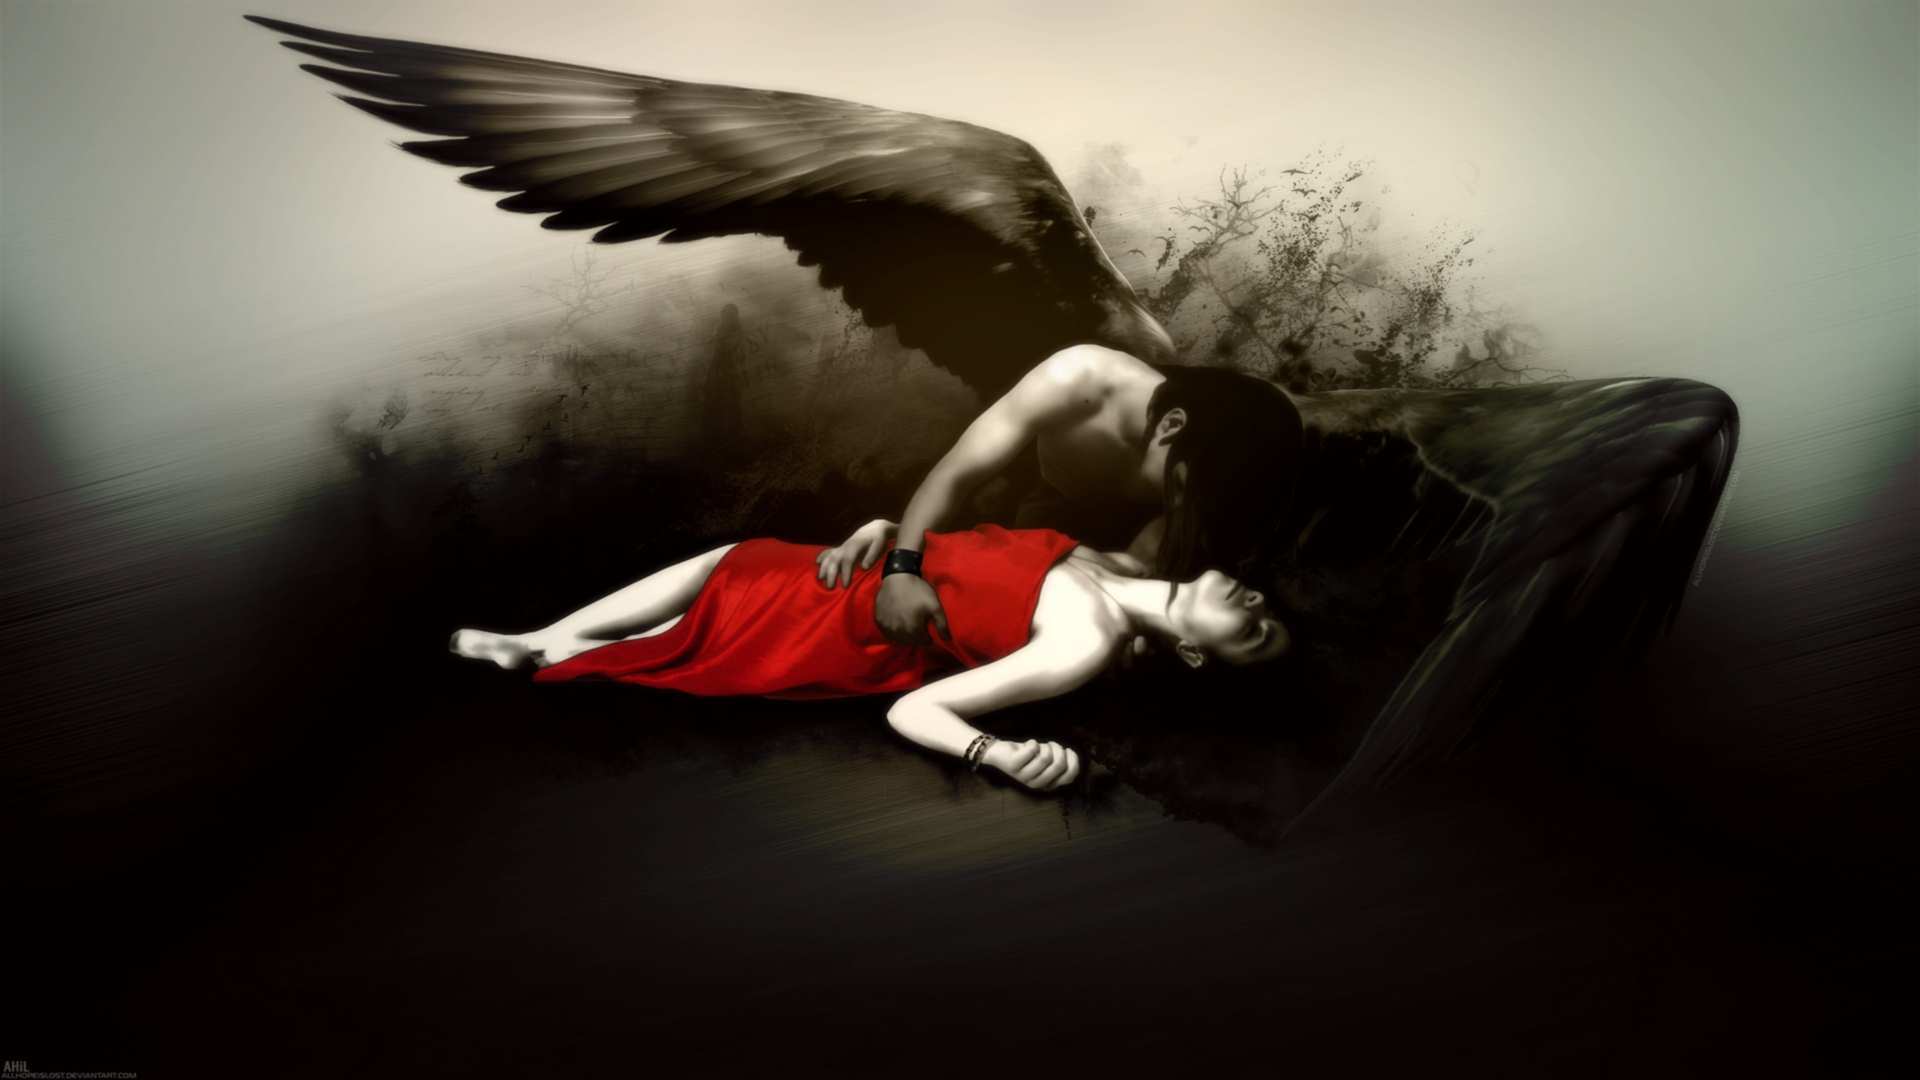 fantasy fallen angel gothic dark wings mood emotion sad sorrow death 1920x1080